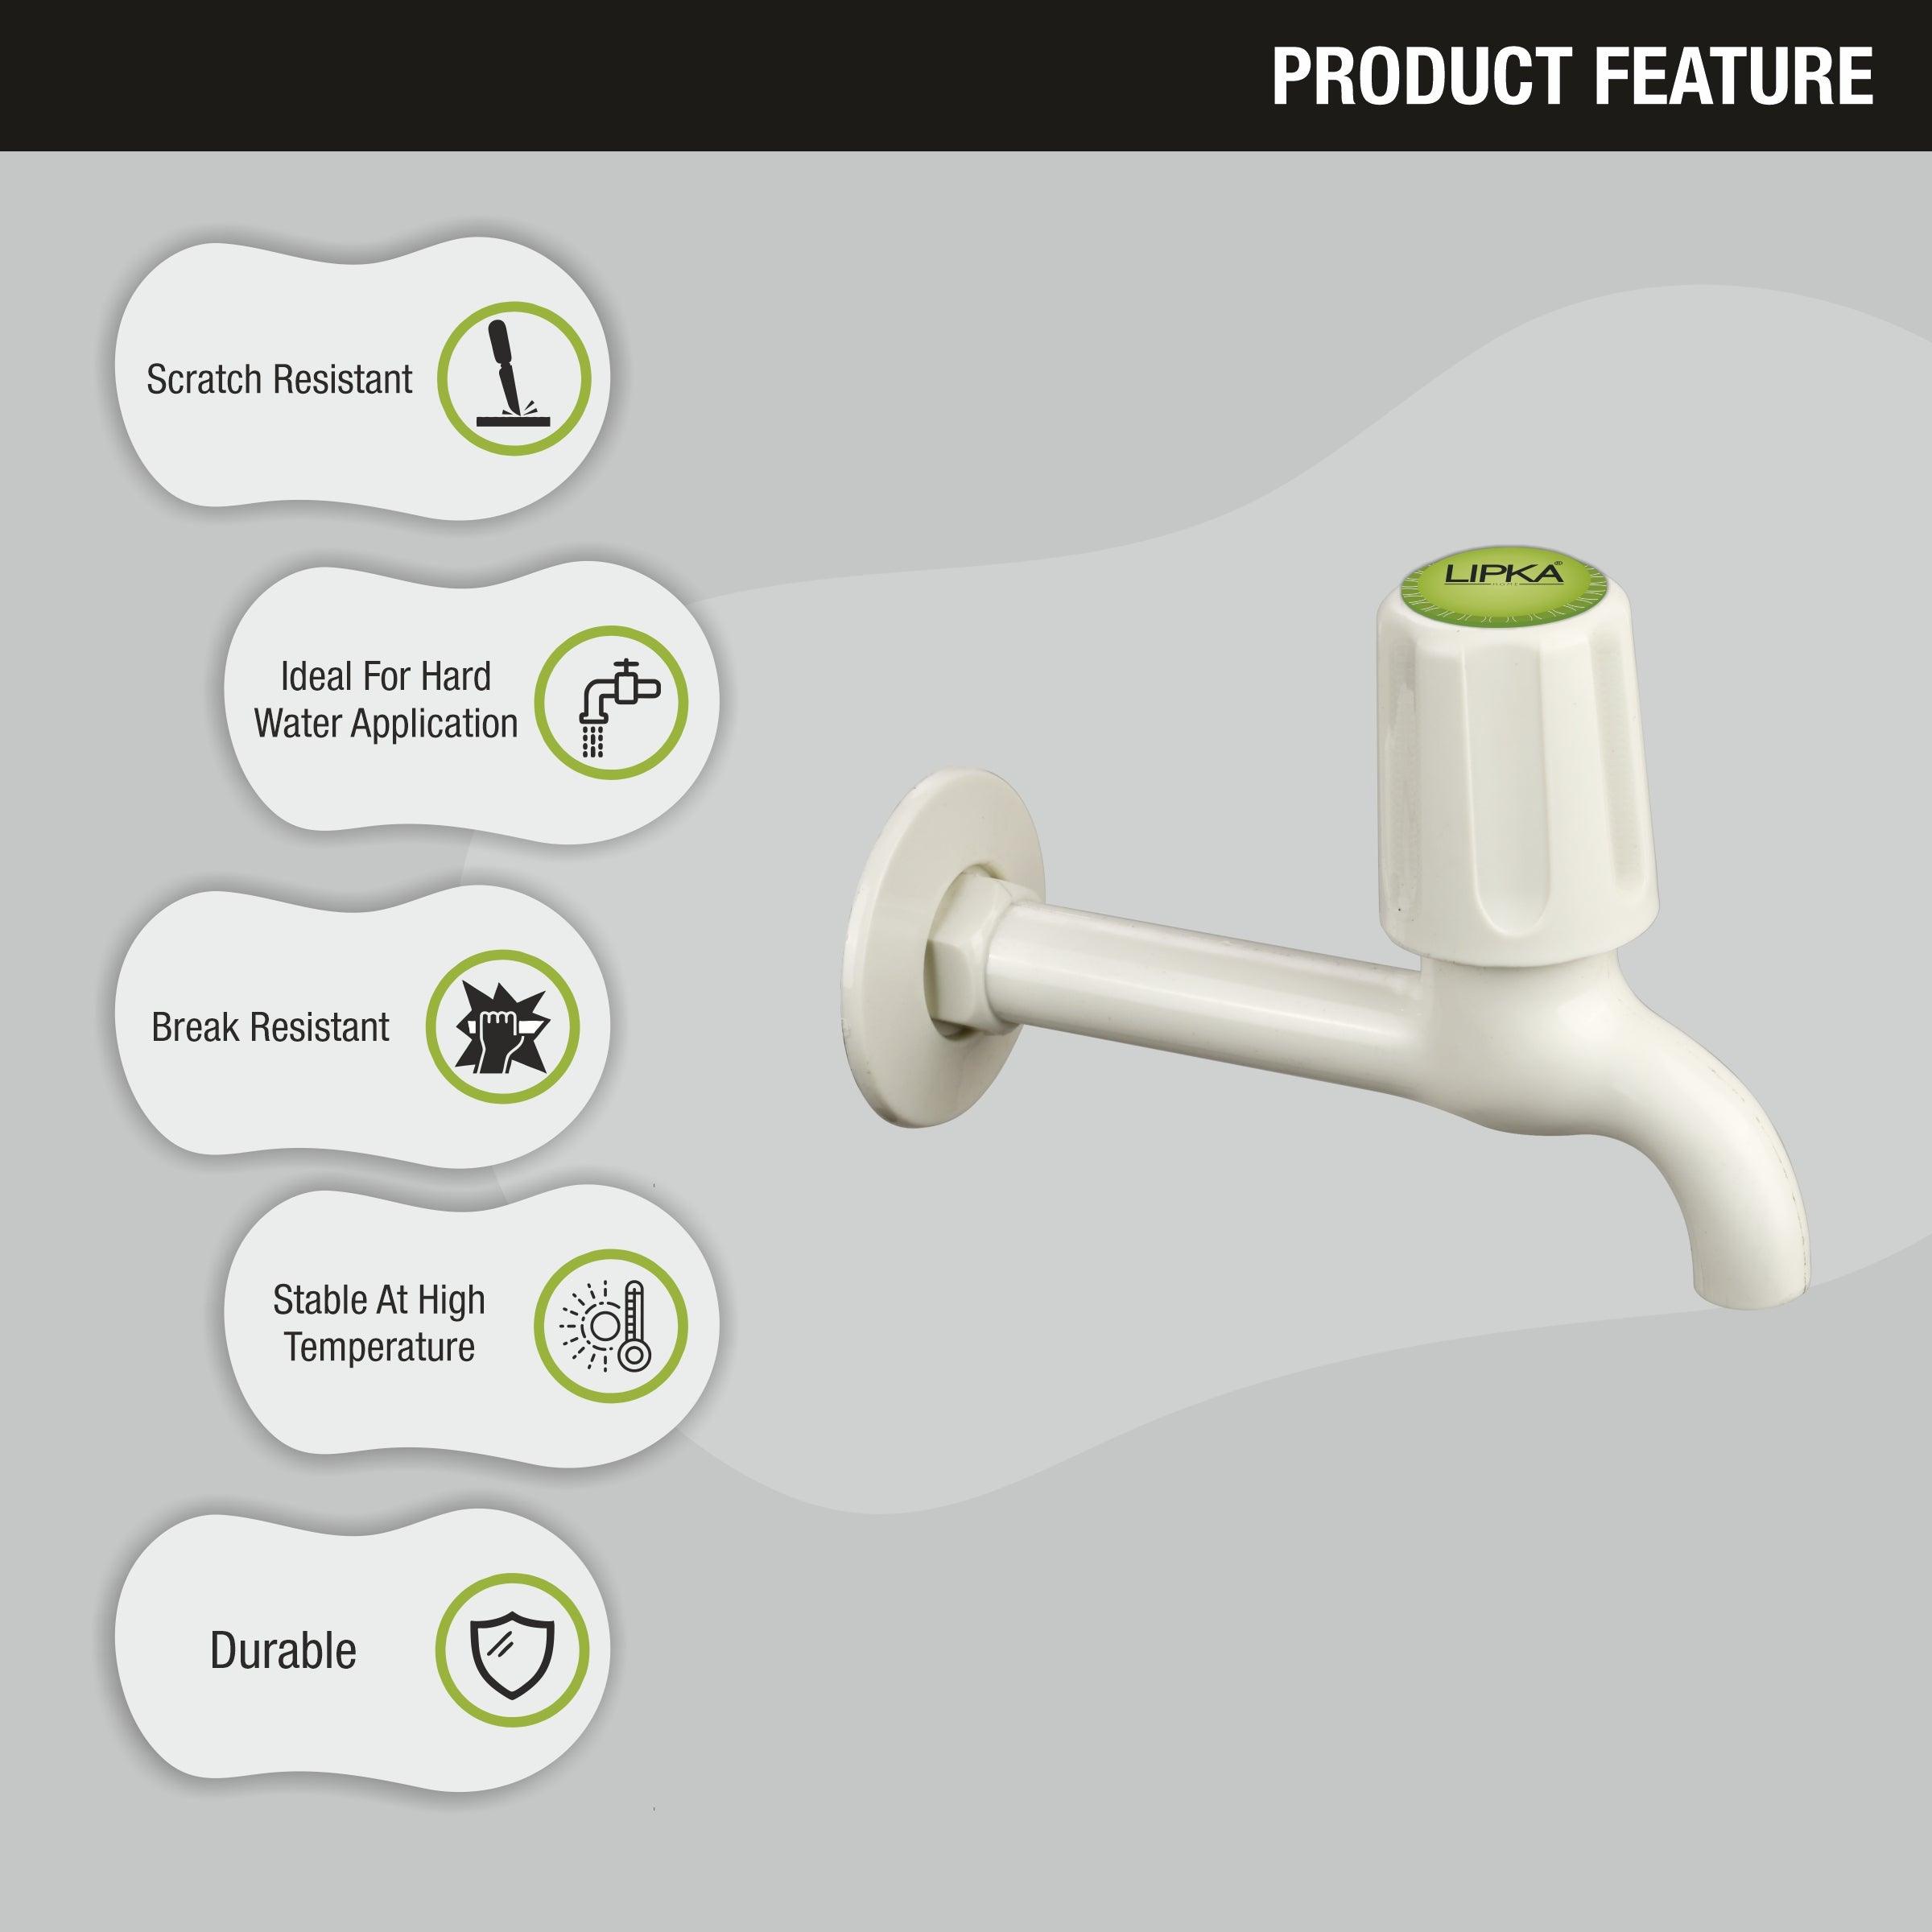 Royal Bib Tap Long Body PTMT Faucet features